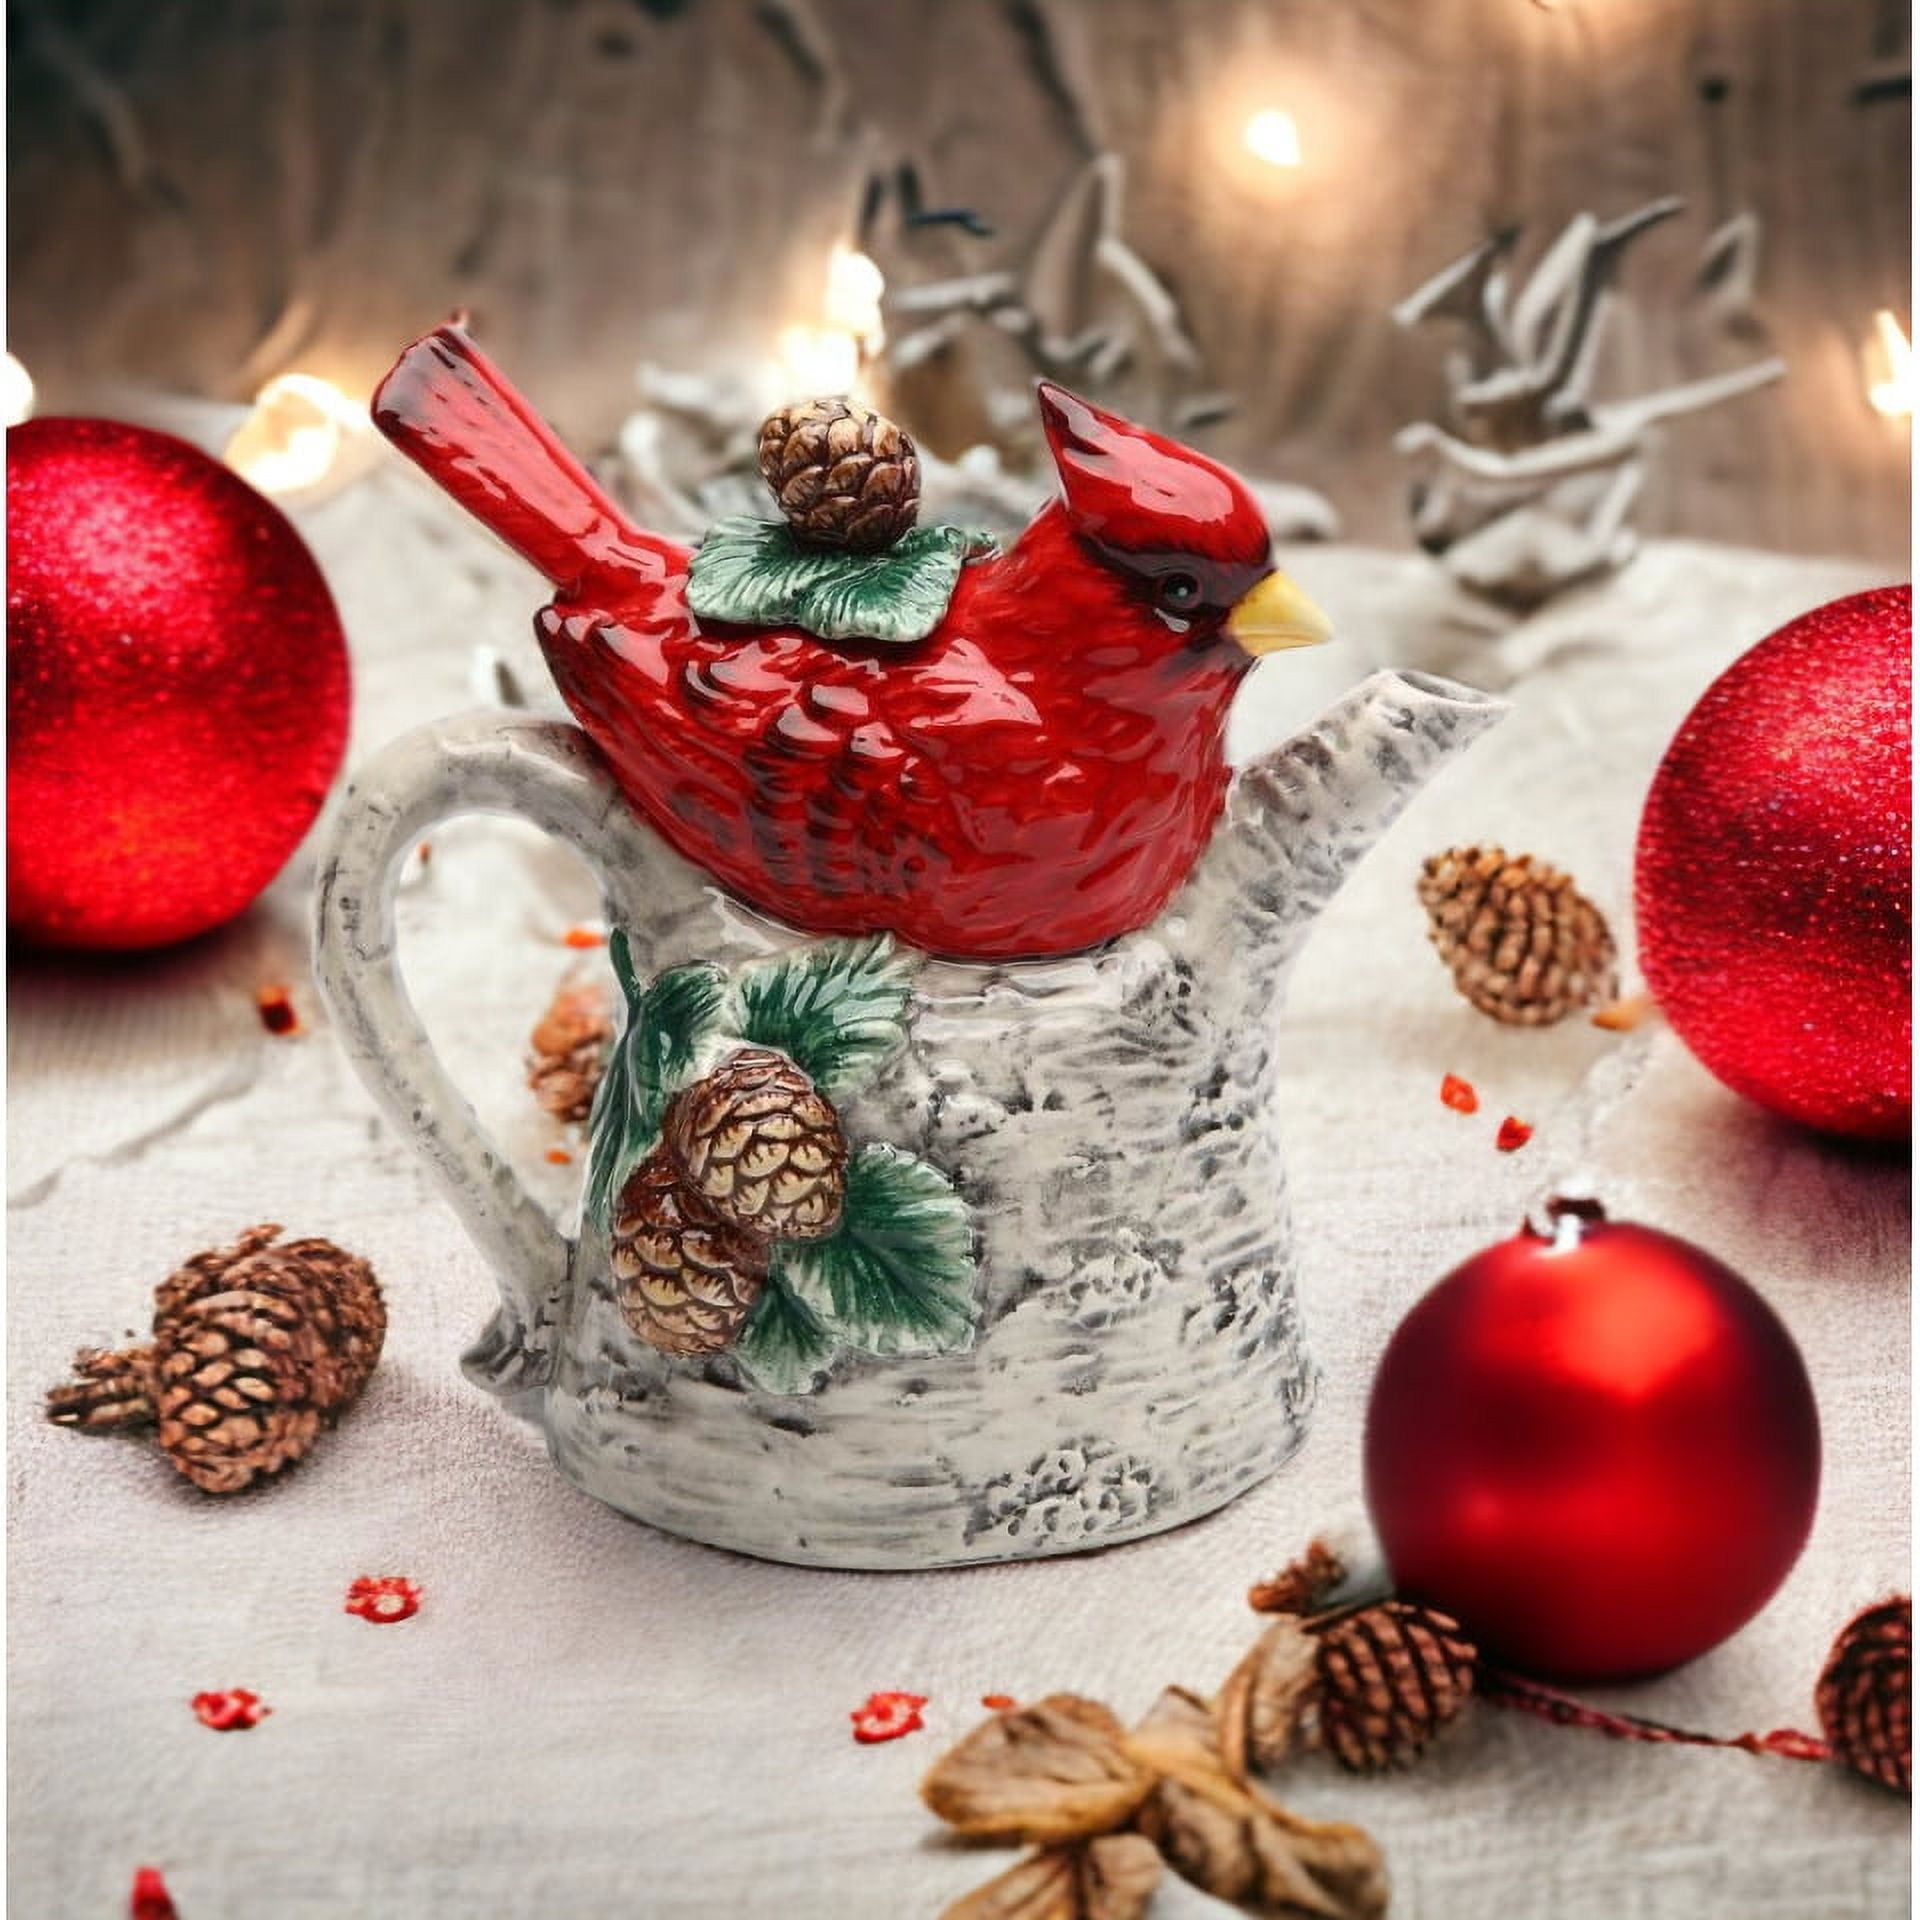 3 Cup Sherwood Teapot - Carolina Parakeet Tea and Gifts